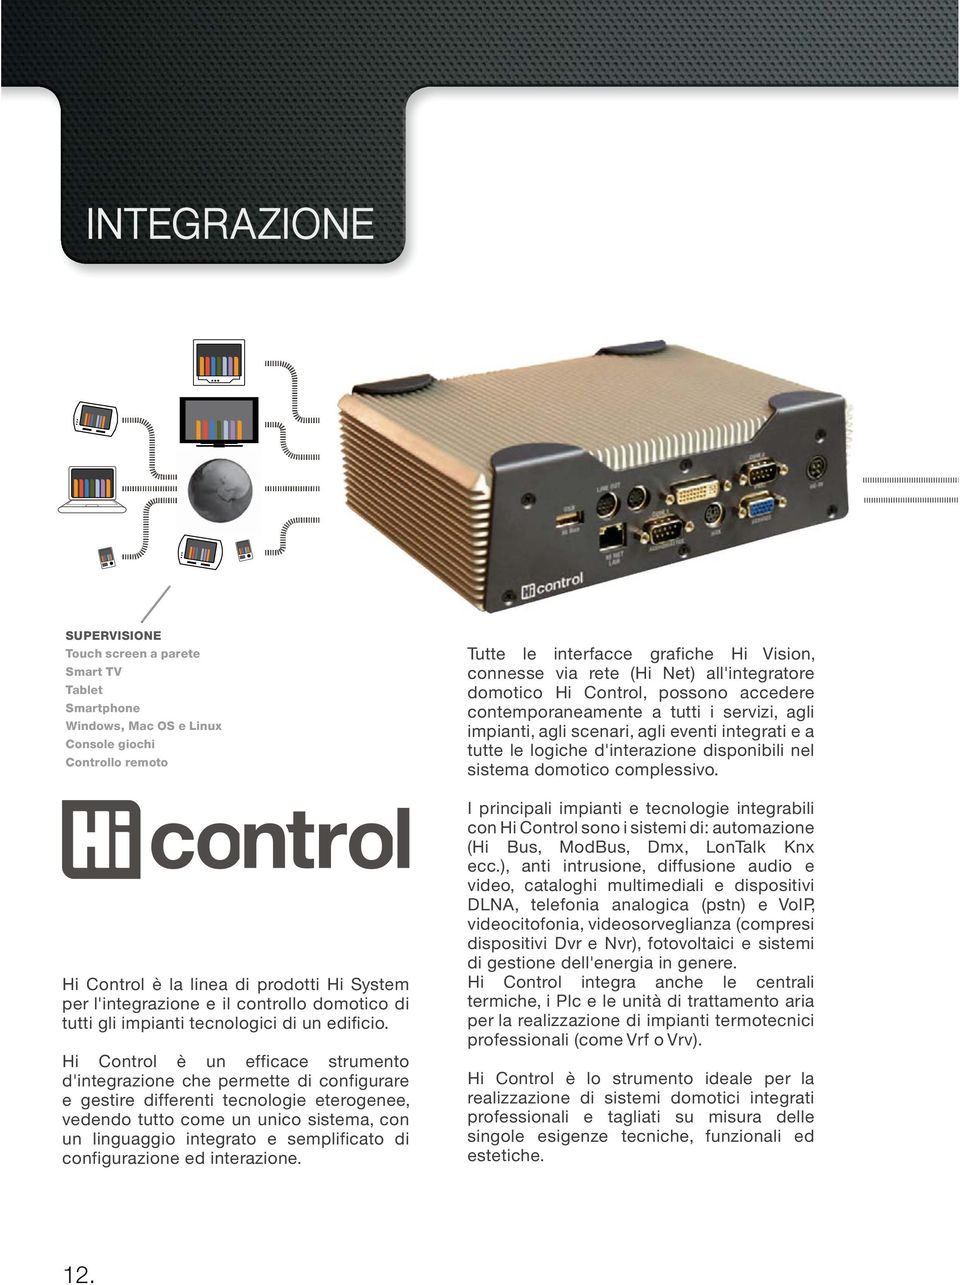 Hi Control è un efficace strumento d'integrazione che permette di configurare e gestire differenti tecnologie eterogenee, vedendo tutto come un unico sistema, con un linguaggio integrato e